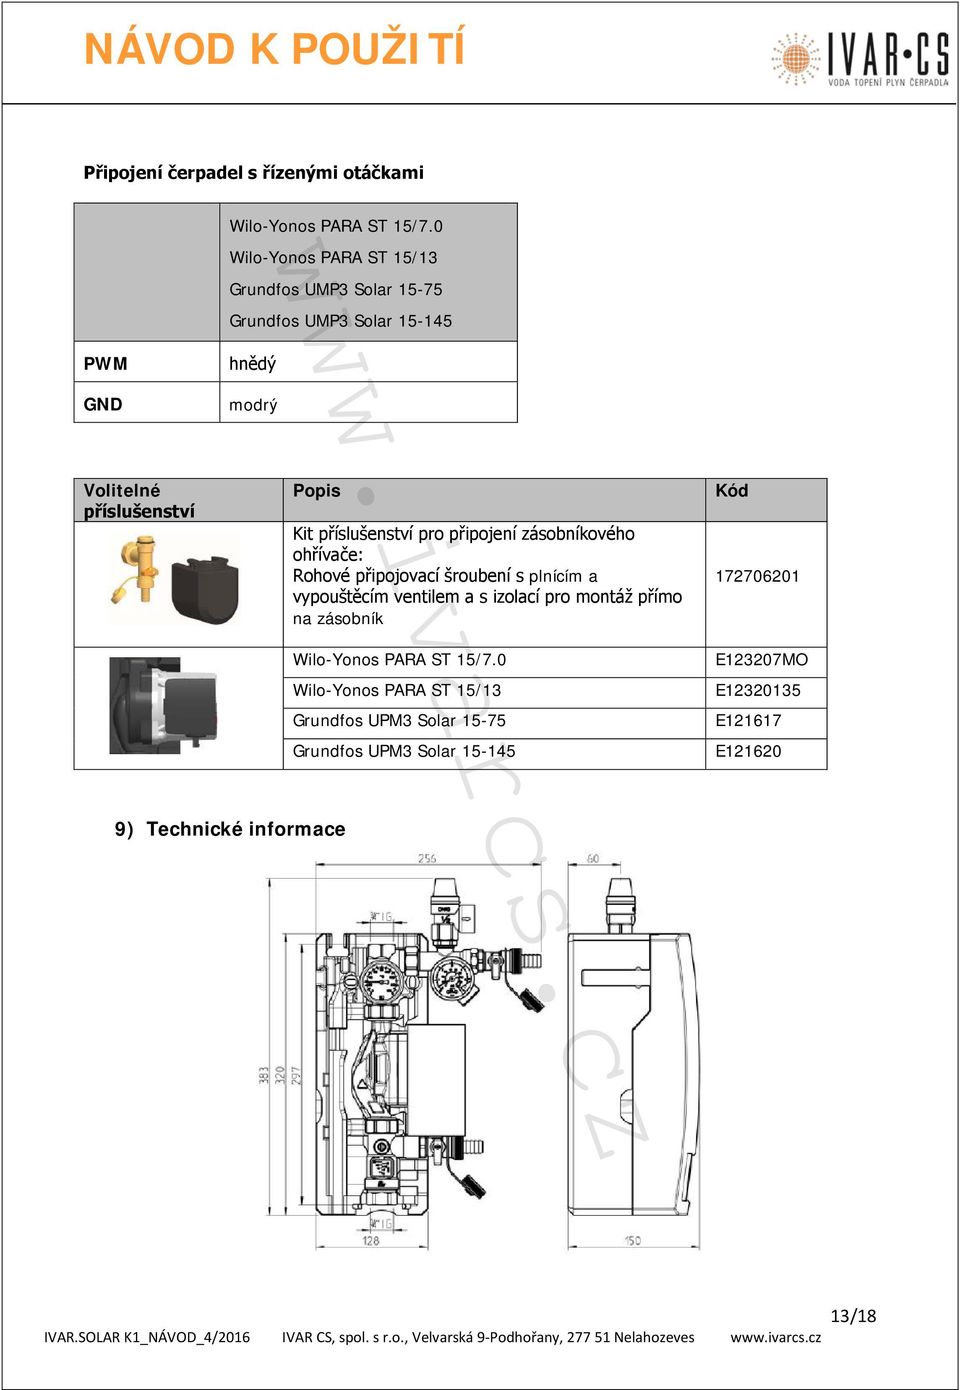 připojení zásobníkového ohřívače: Rohové připojovací šroubení s plnícím a vypouštěcím ventilem a s izolací pro montáž přímo na zásobník Wilo-Yonos PARA ST